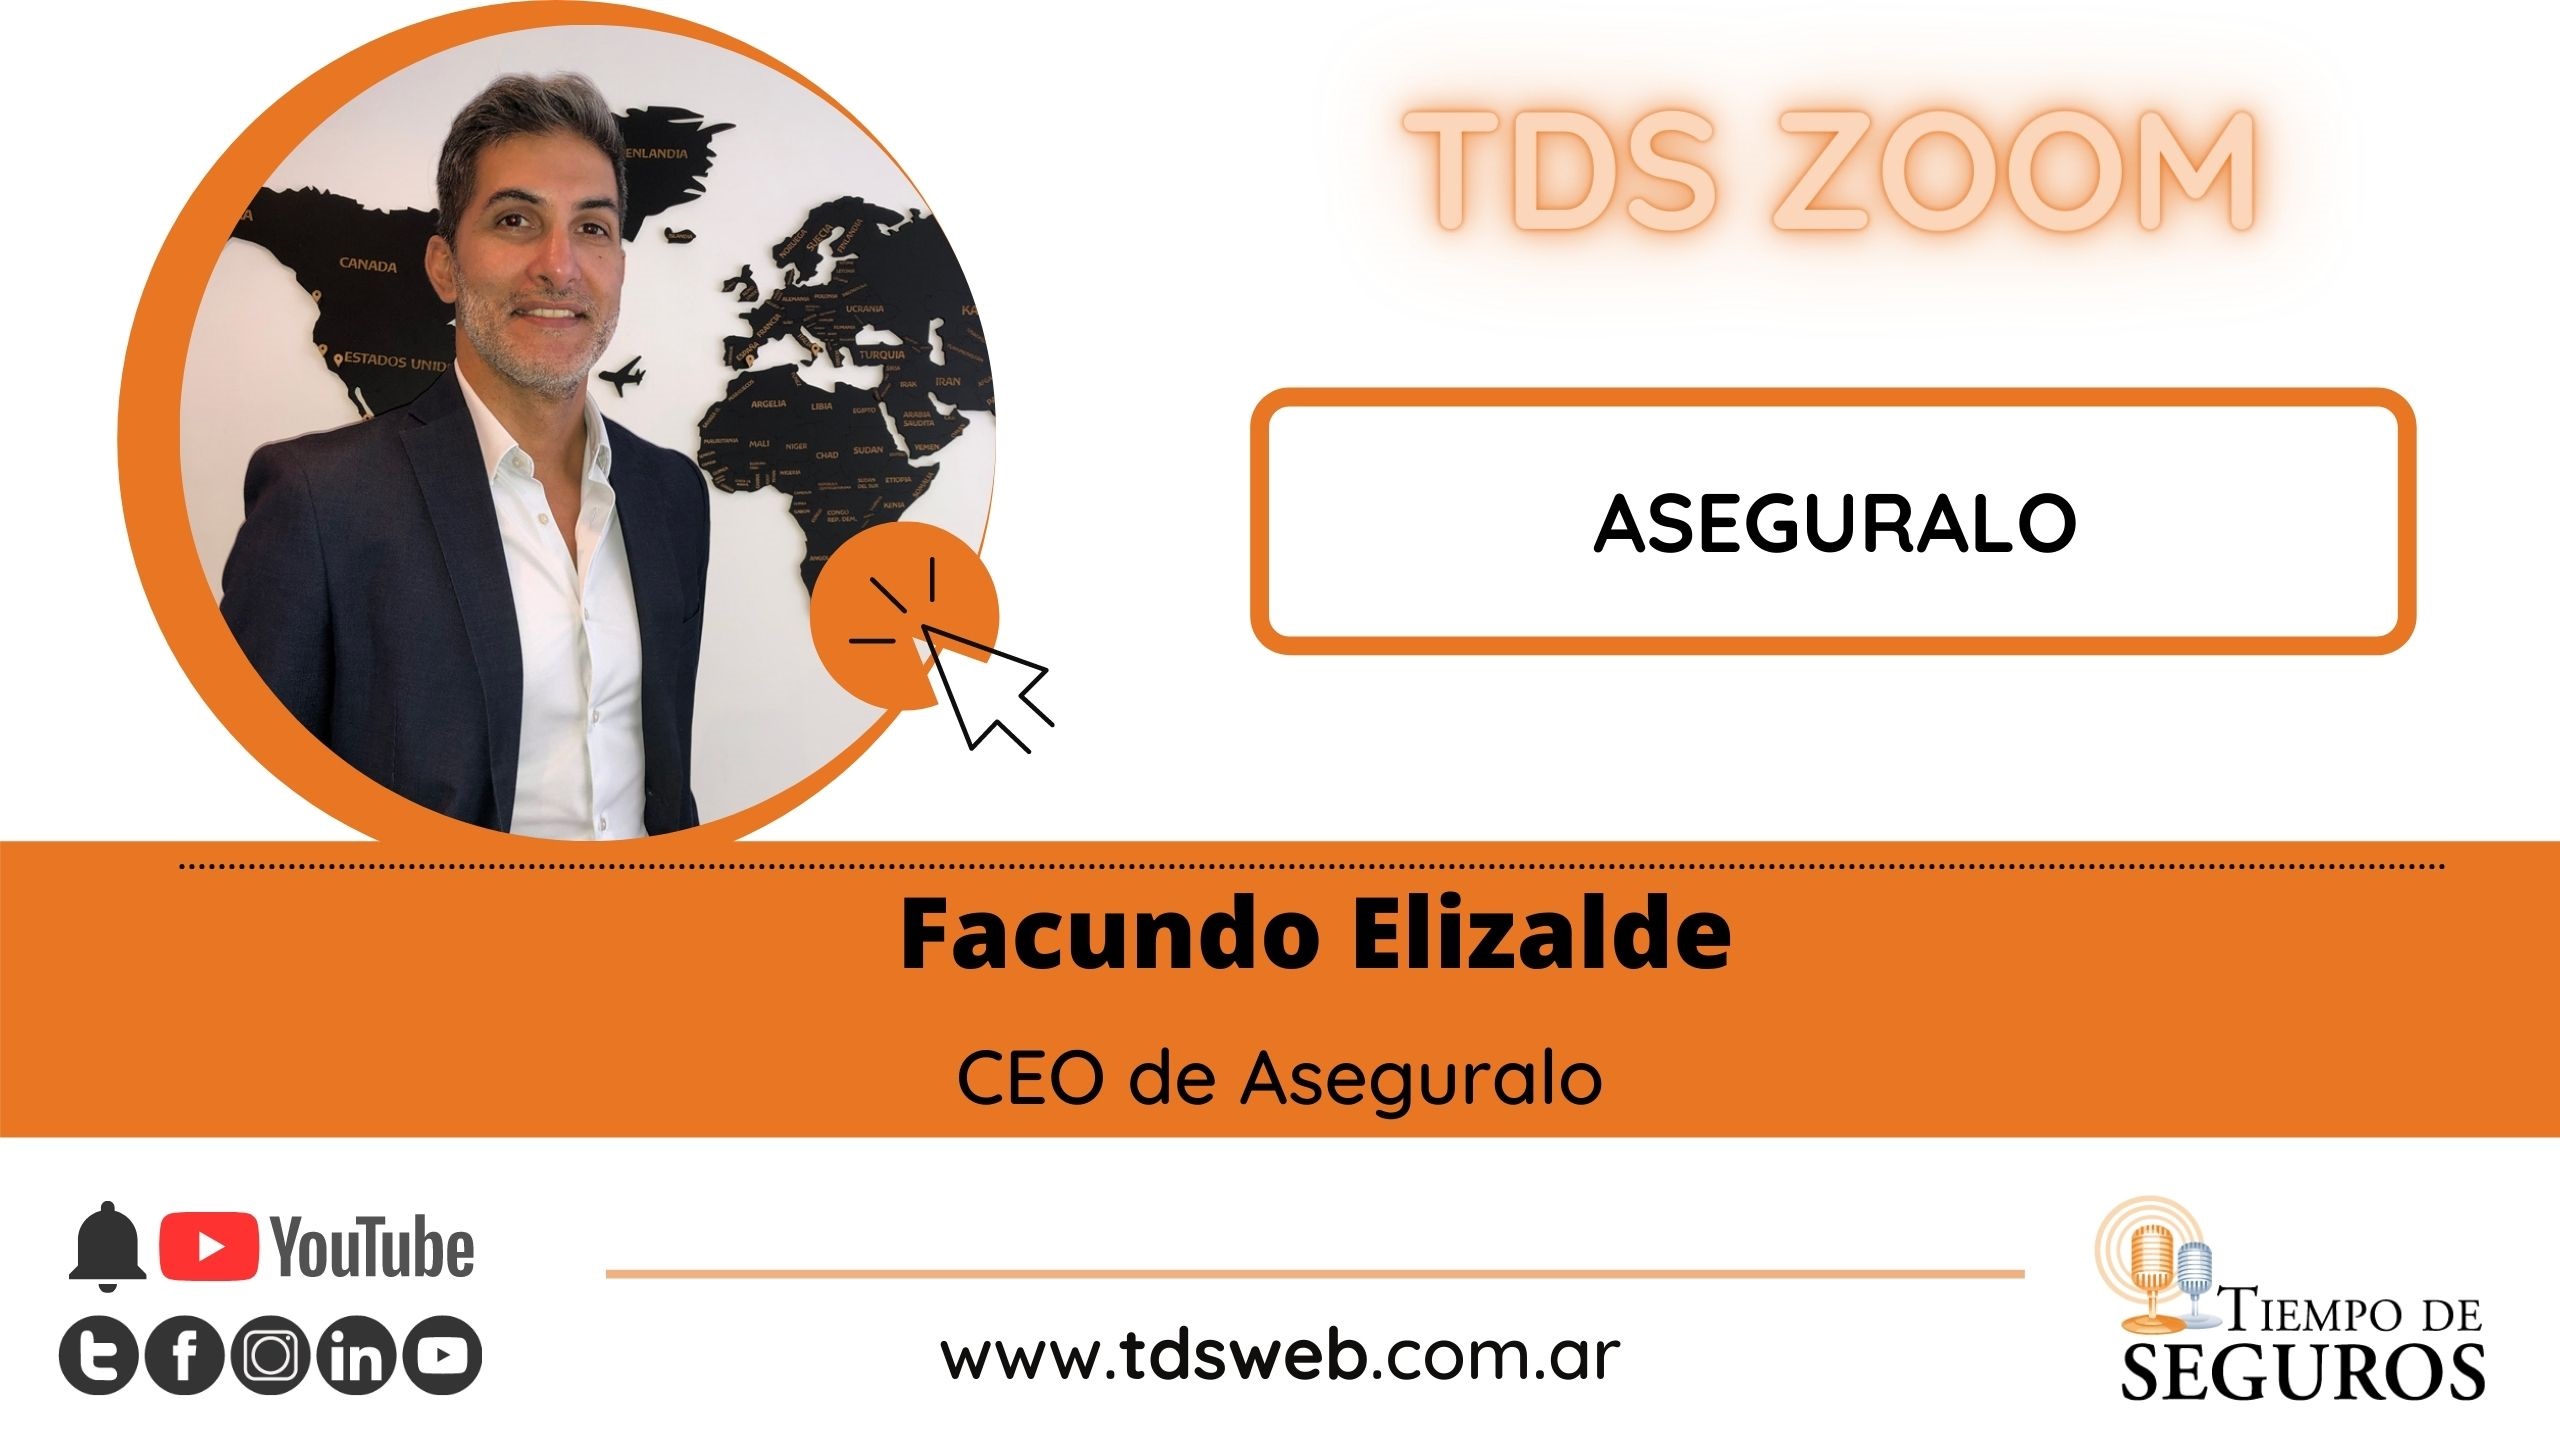 Entrevistamos a Facundo Elizalde, CEO de ASEGURALO.COM. Quisimos conocer acerca de su trayectoria en la actividad aseguradora y también acerca de ASEGURALO.COM; cómo es su plataforma y funcionalidades.